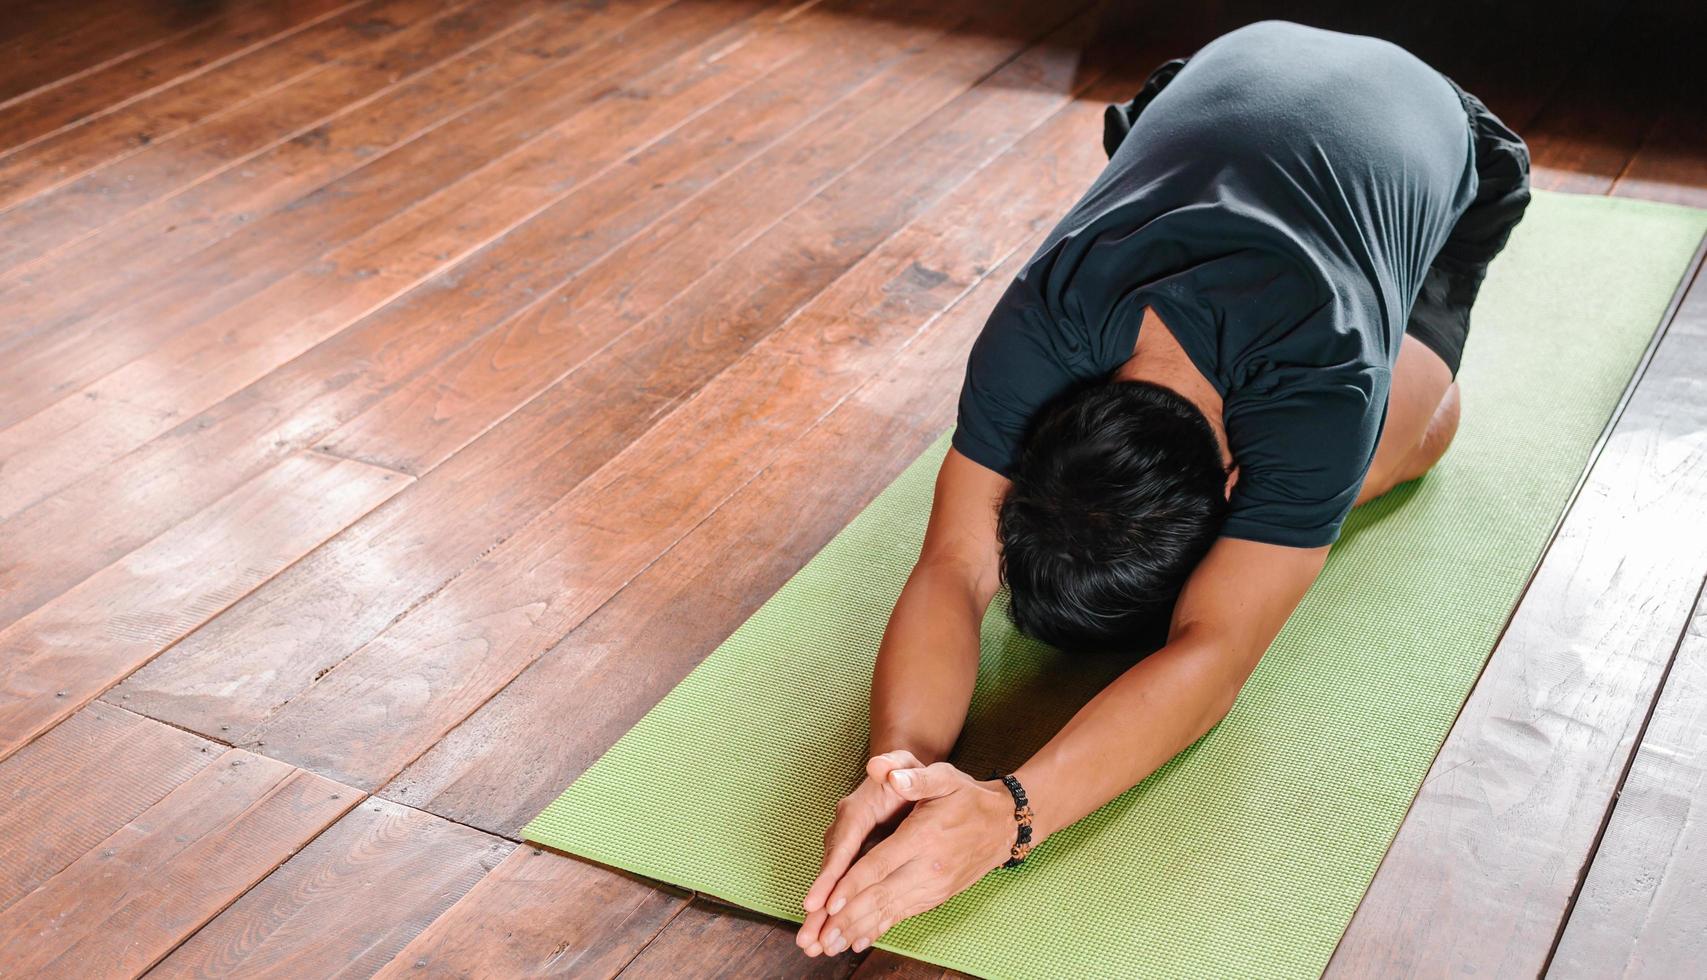 el hombre asiático deportivo de negro está haciendo yoga mientras hace ejercicio en una colchoneta de yoga en casa con piso de madera. práctica de yoga hombre pose entrenamiento concepto de vida saludable foto